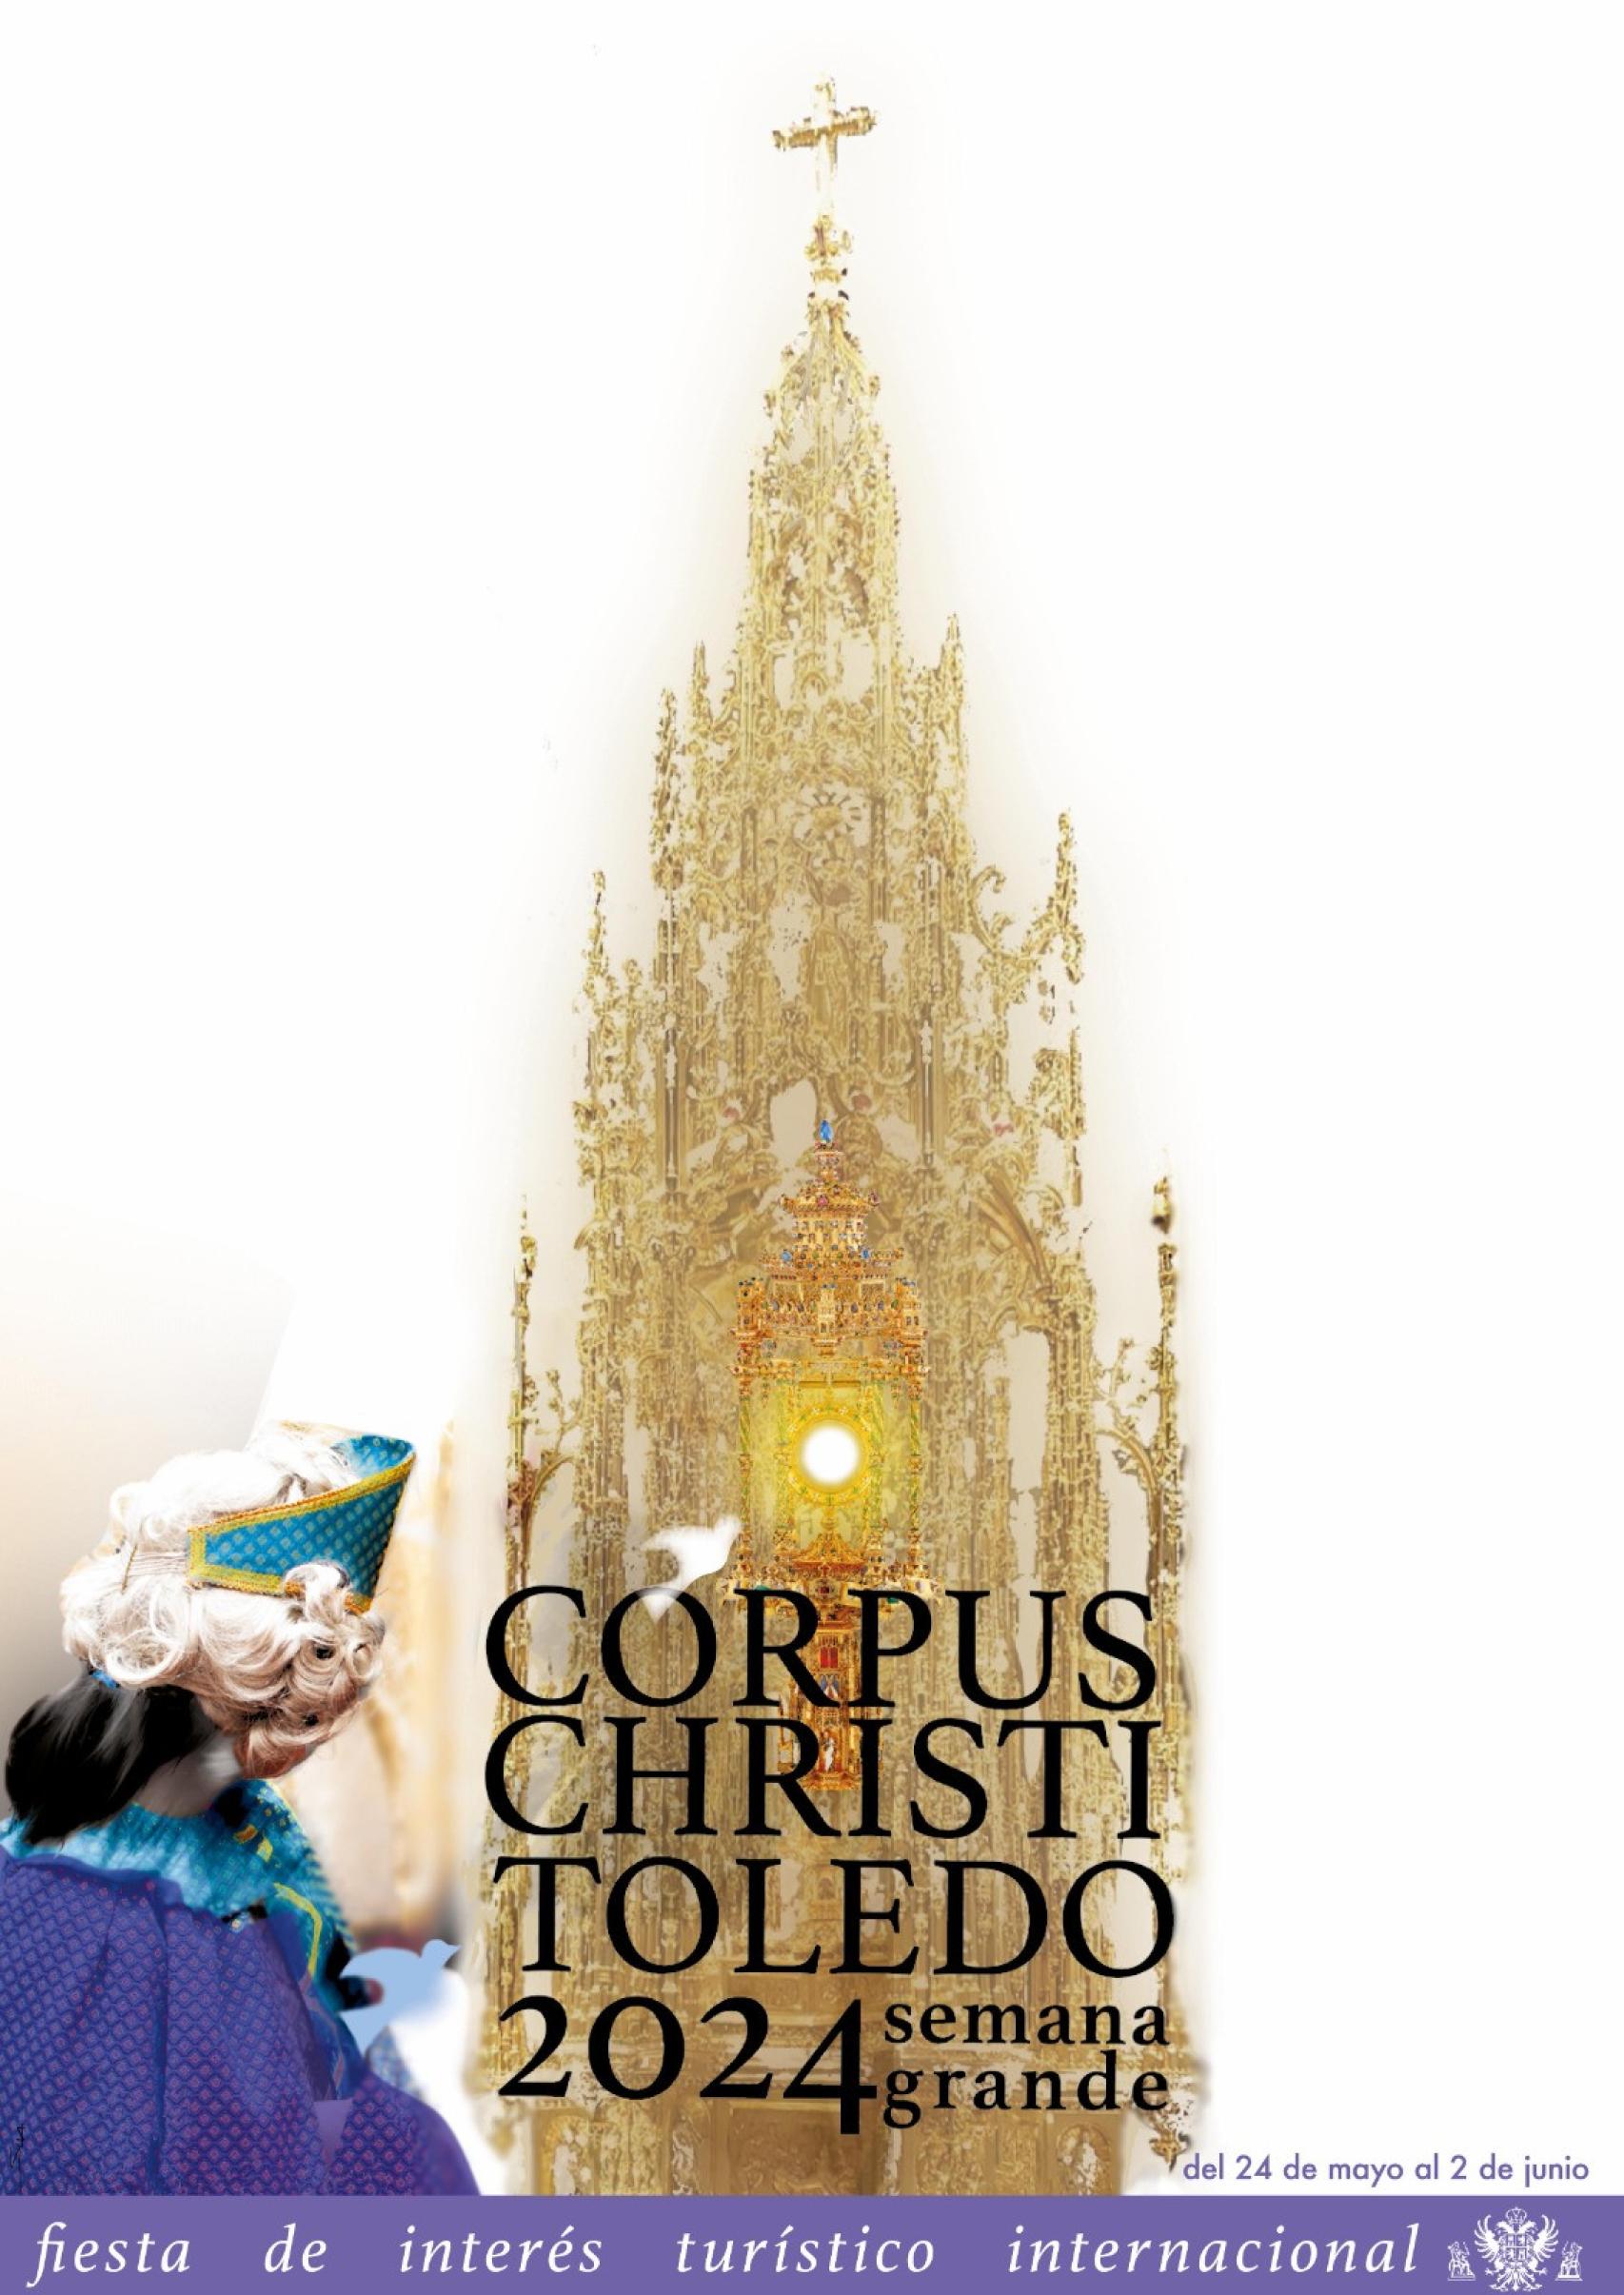 El cartel anunciador del Corpus 2024 en Toledo.